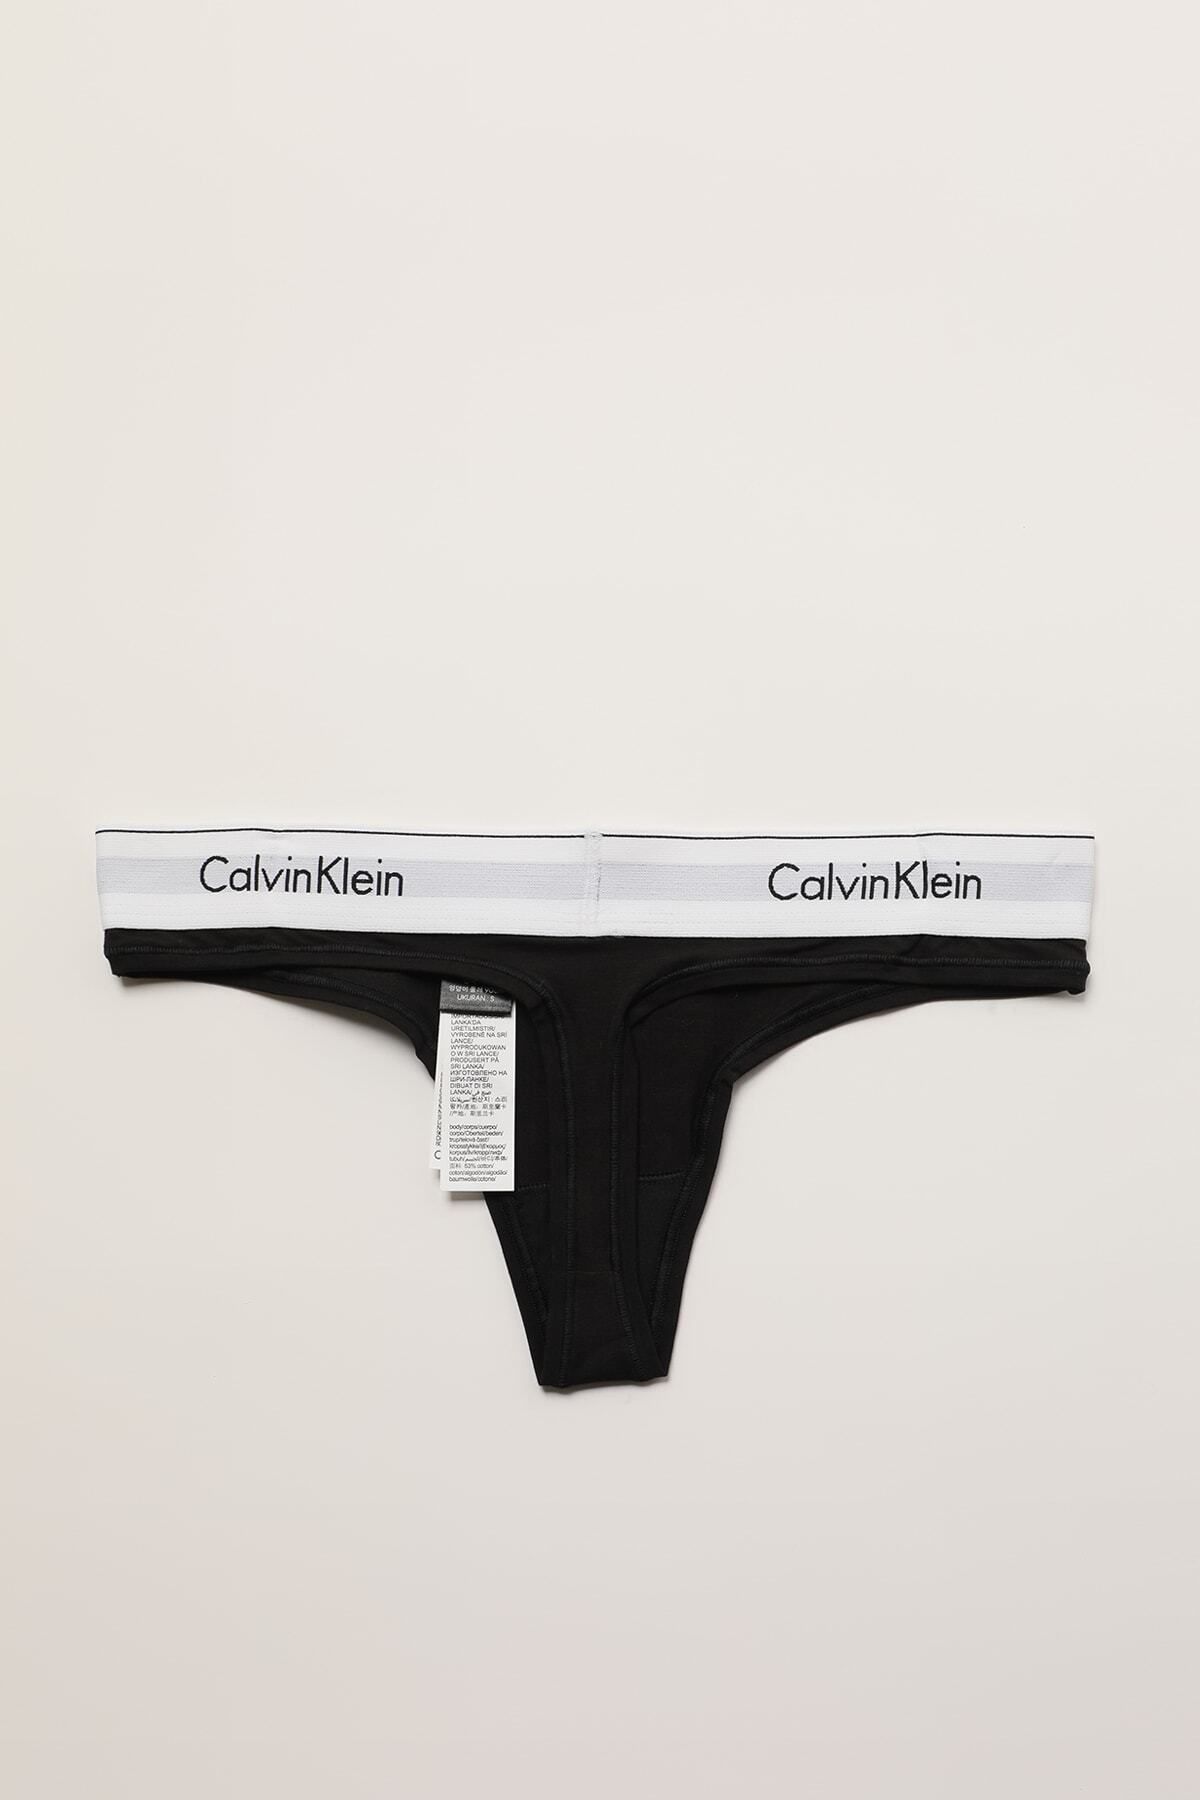 Calvin Klein Kadın Coordinate Panties 0000f3786e